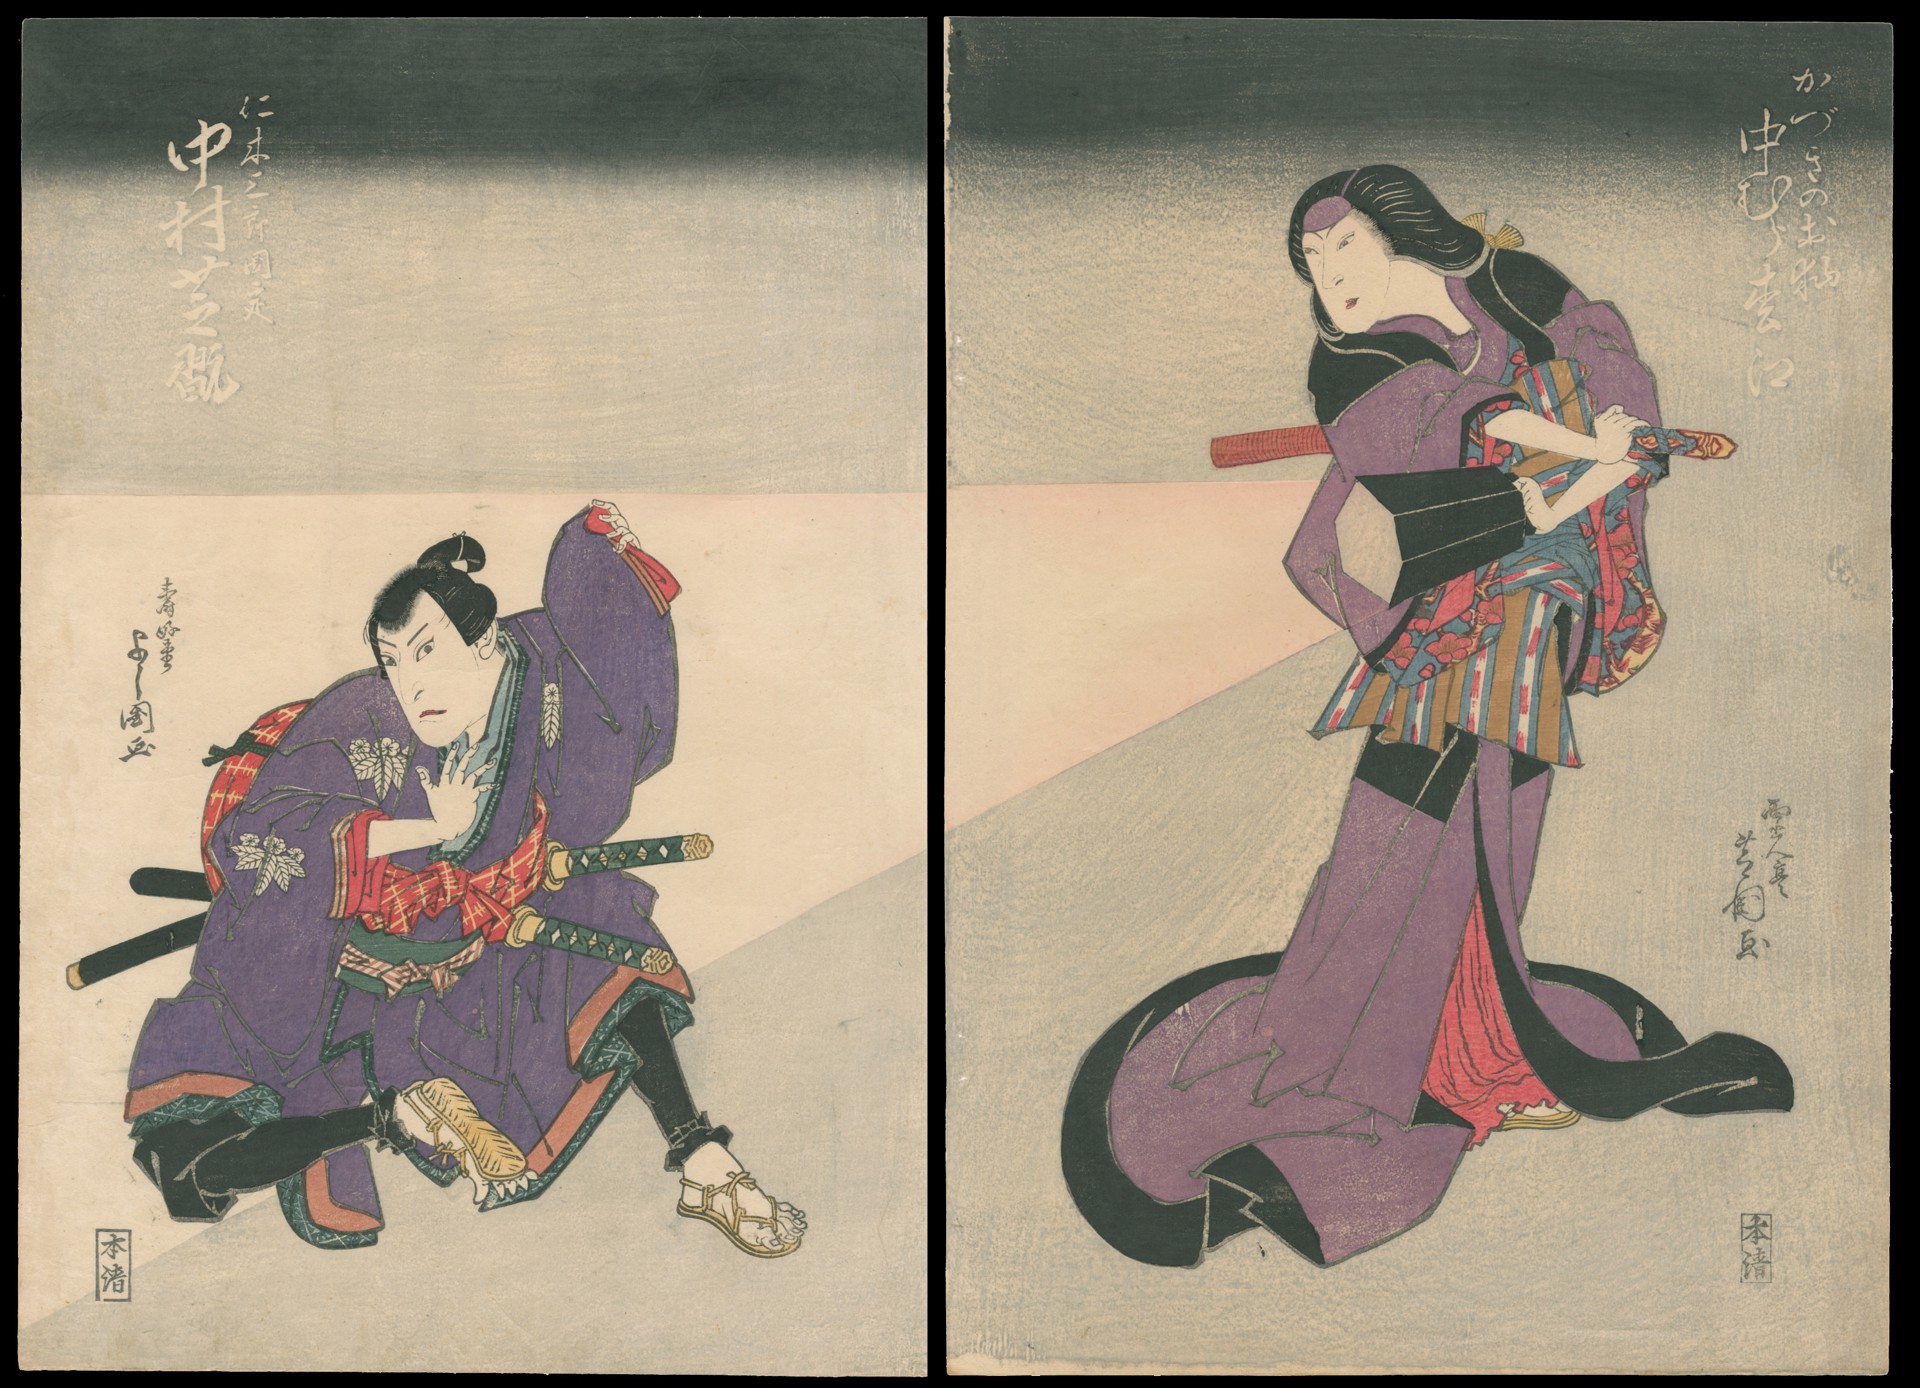 A Scene from the Play "Kinoshitakage Hazoma Gassen" by Shibakuni (1821-26) & Yoshikuni (1803-40)